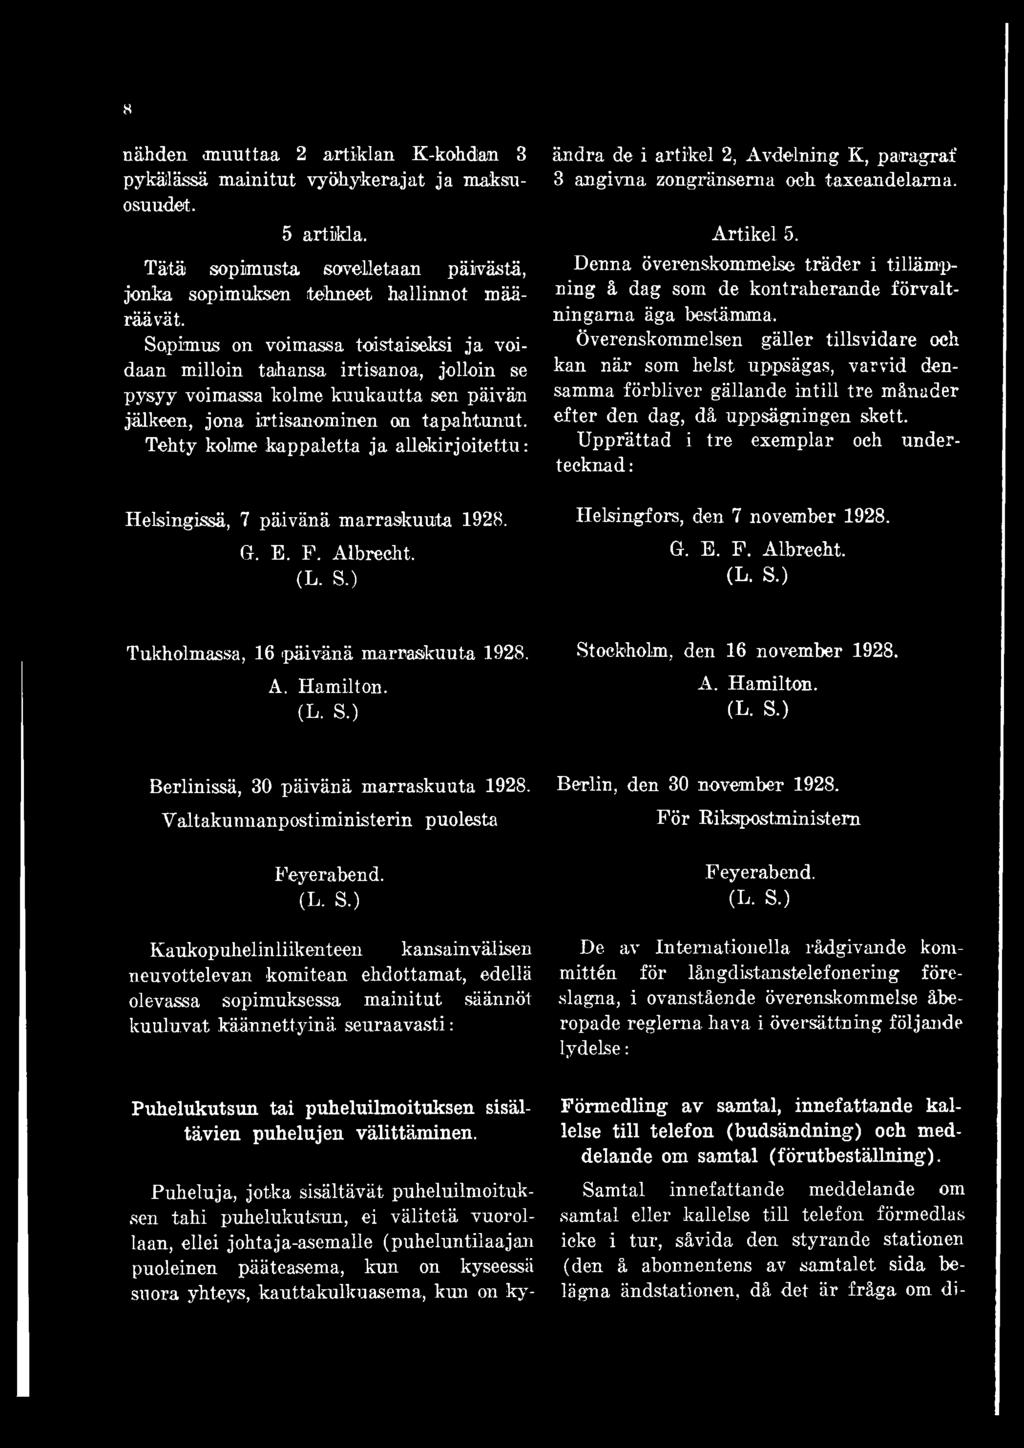 Tehty kolme kappaletta ja allekirjoitettu: Helsingissä, 7 päivänä marraskuuta 1928. G. E. F. Albrecht. (L. S.